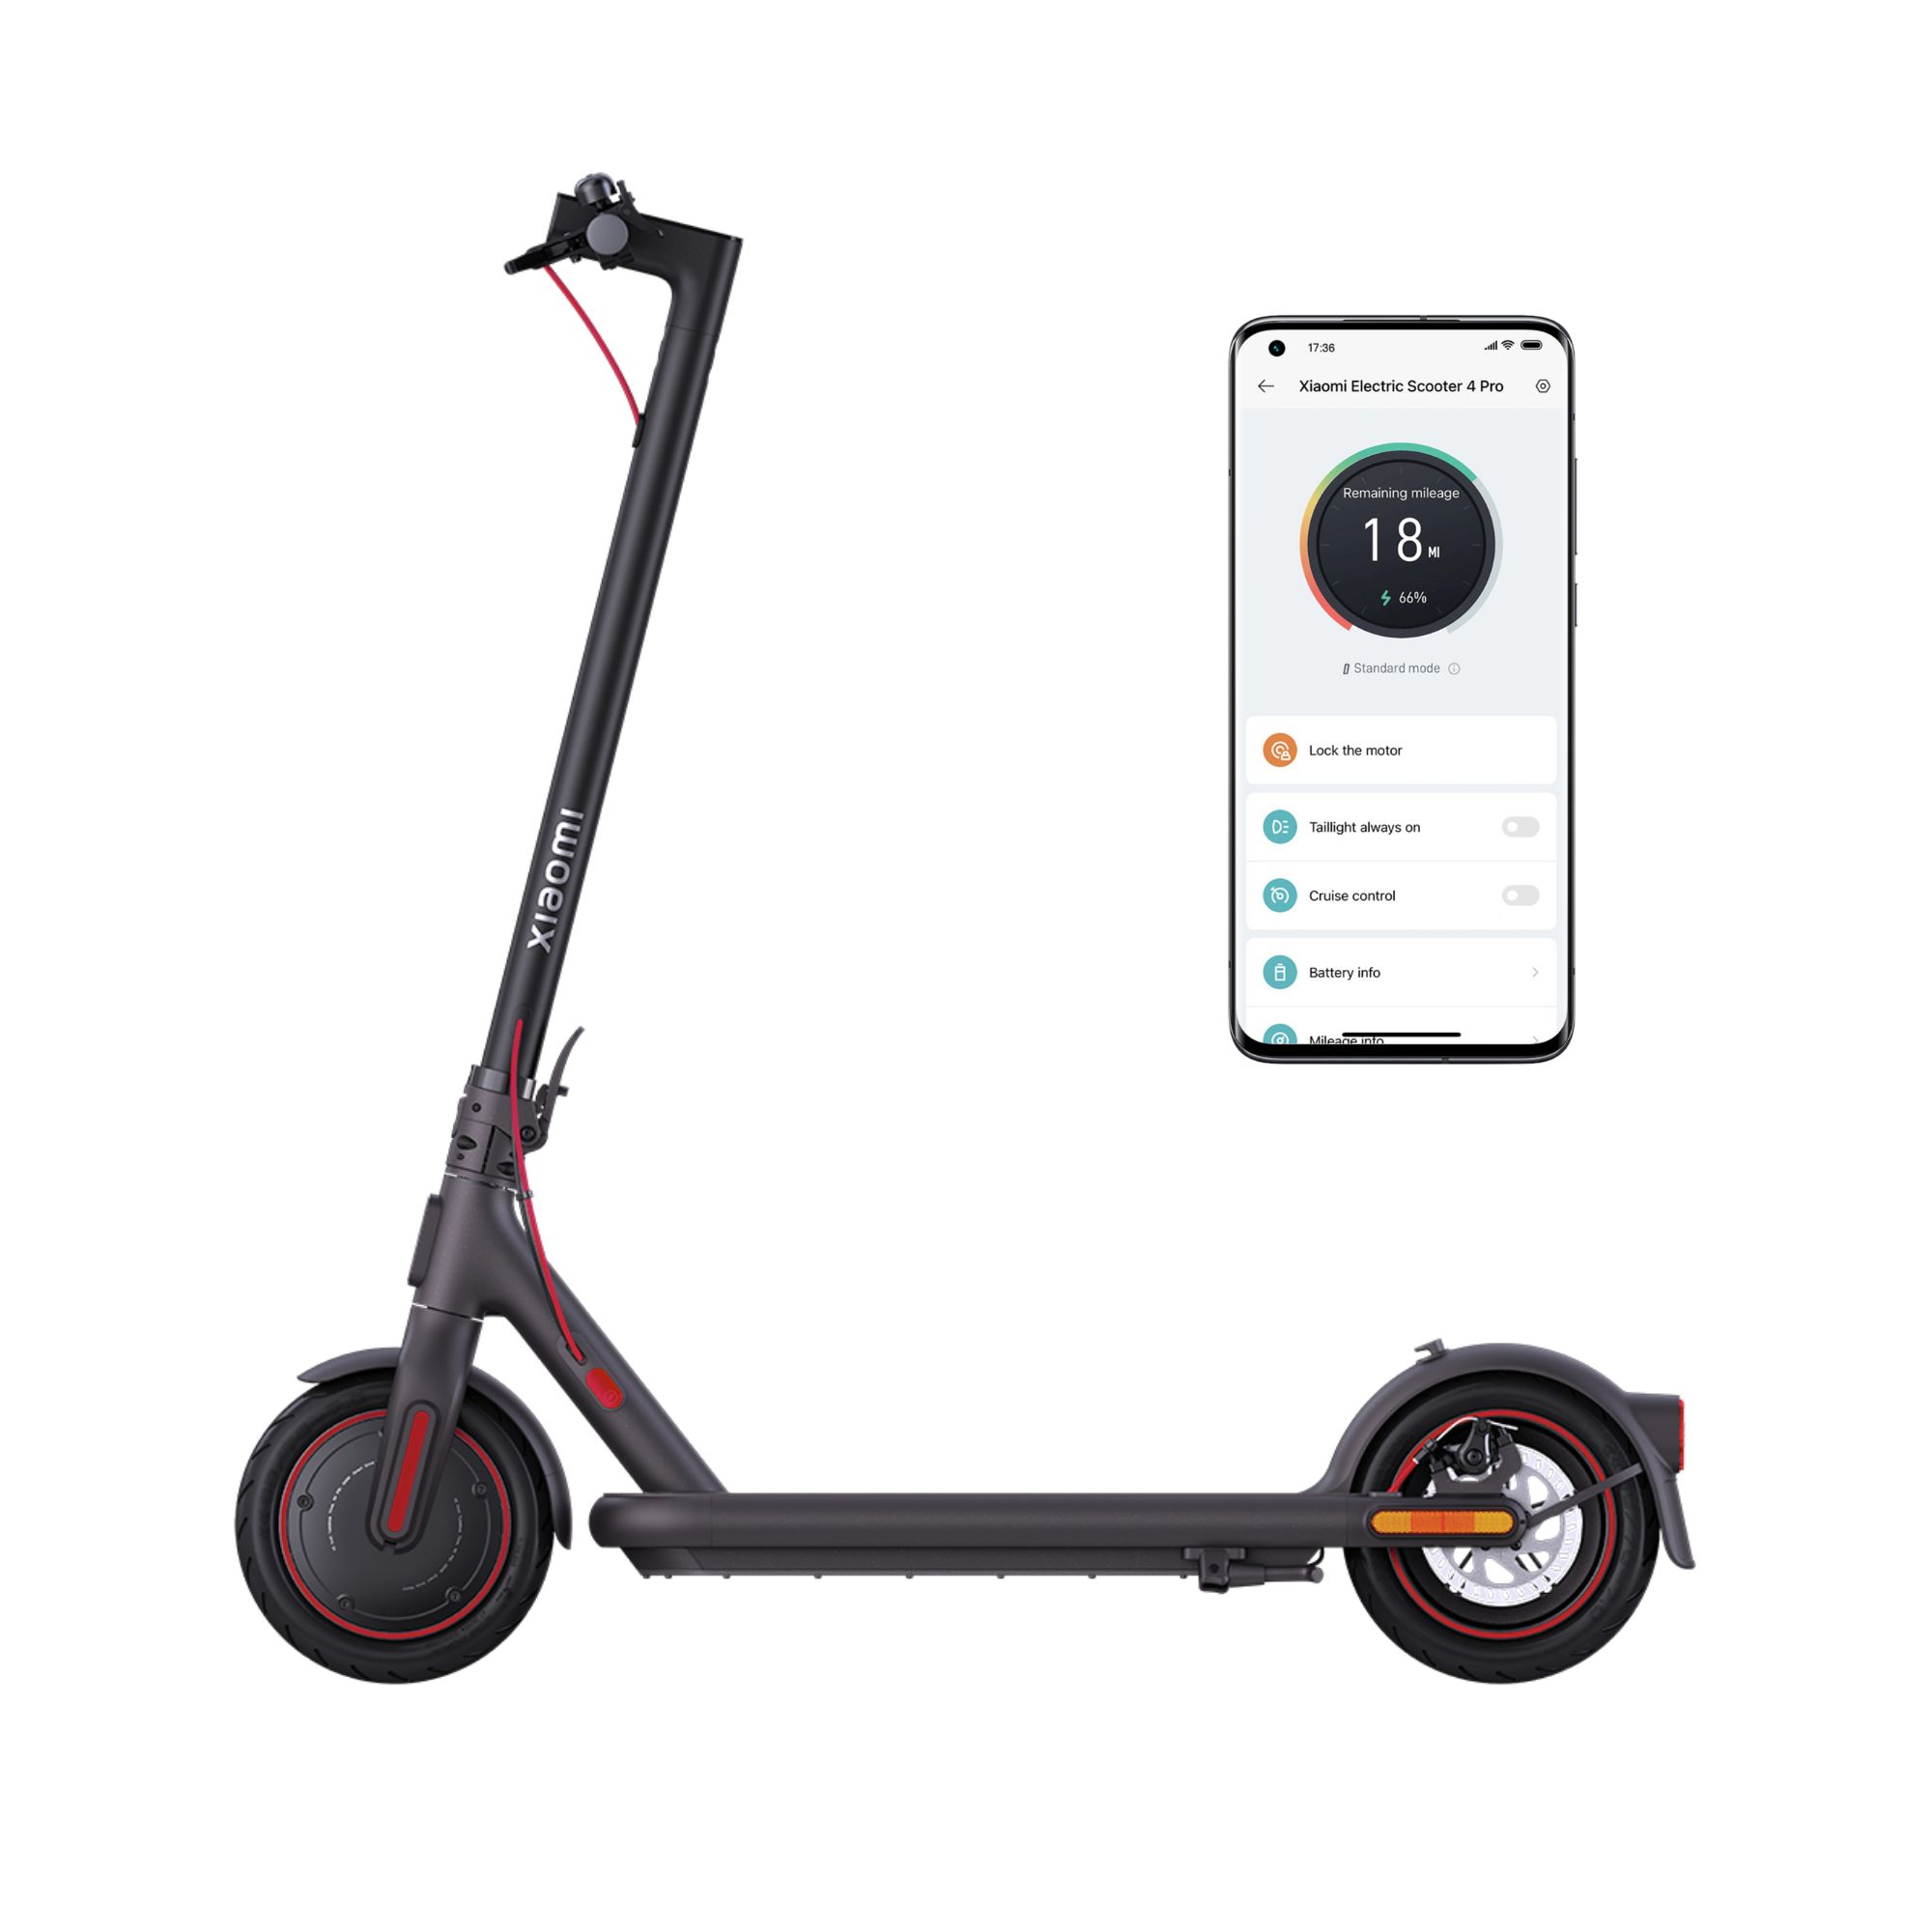 Patinetes eléctricos y scooters eléctricos, Comprar online al